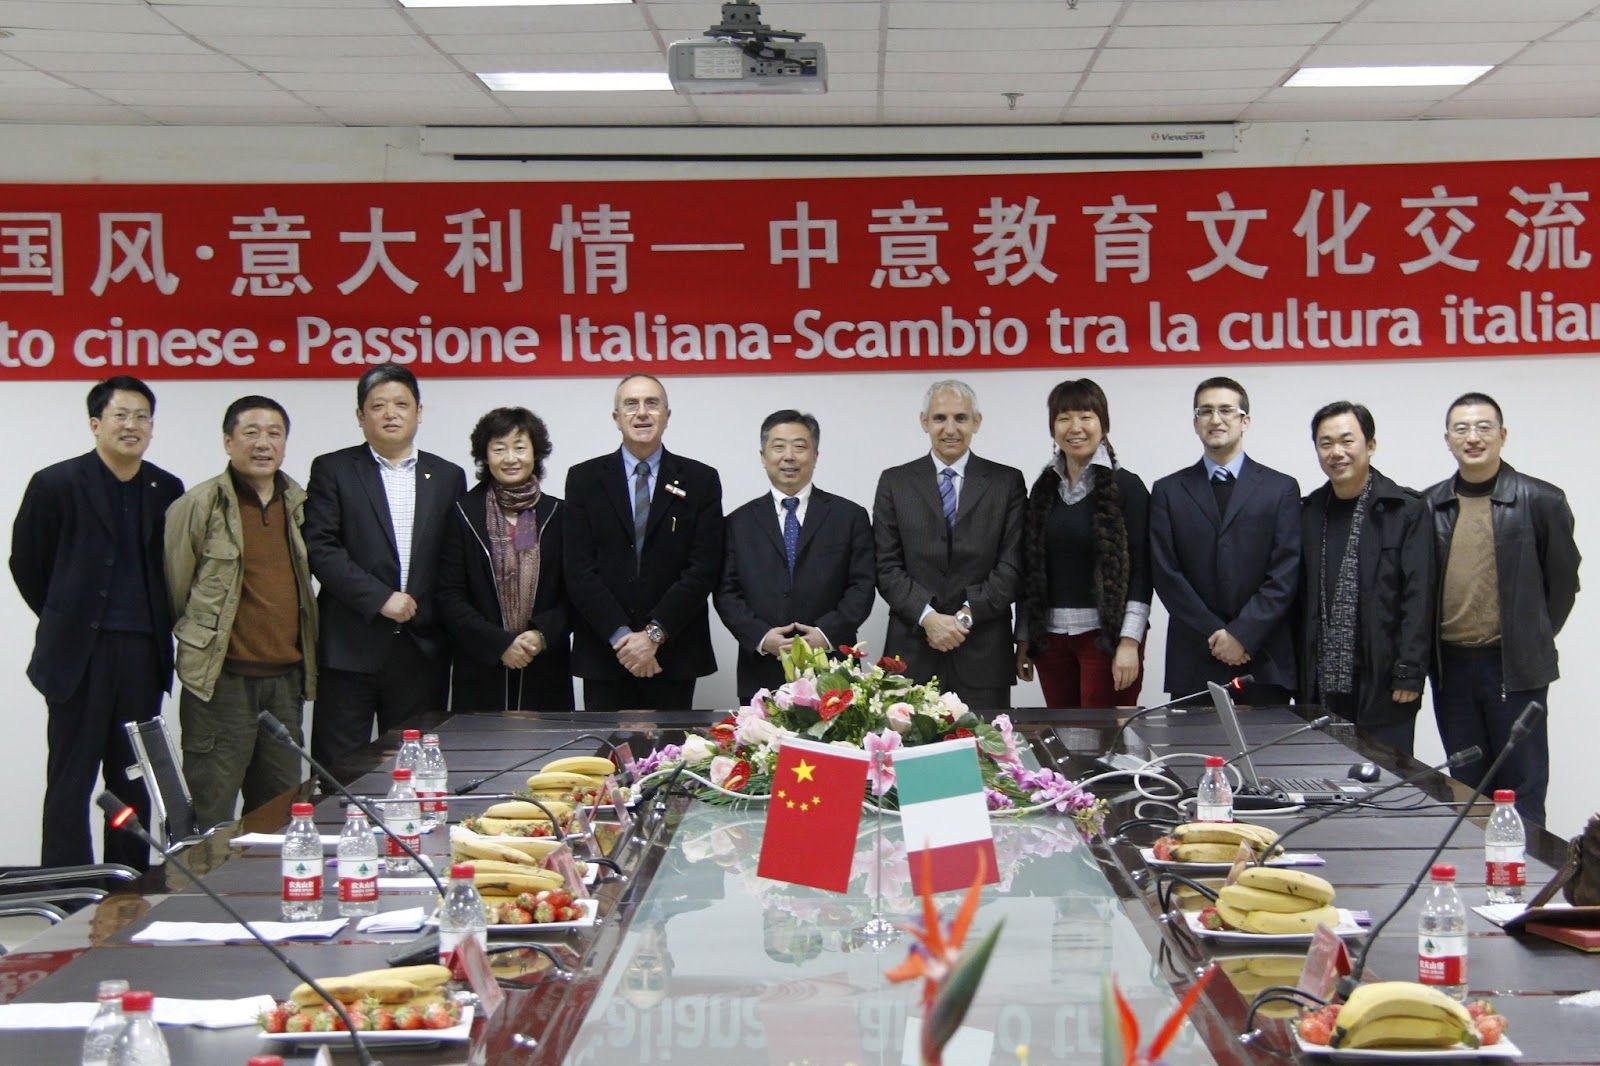 Italia e Cina unite nel nome della Sardegna. Un ponte tra due culture